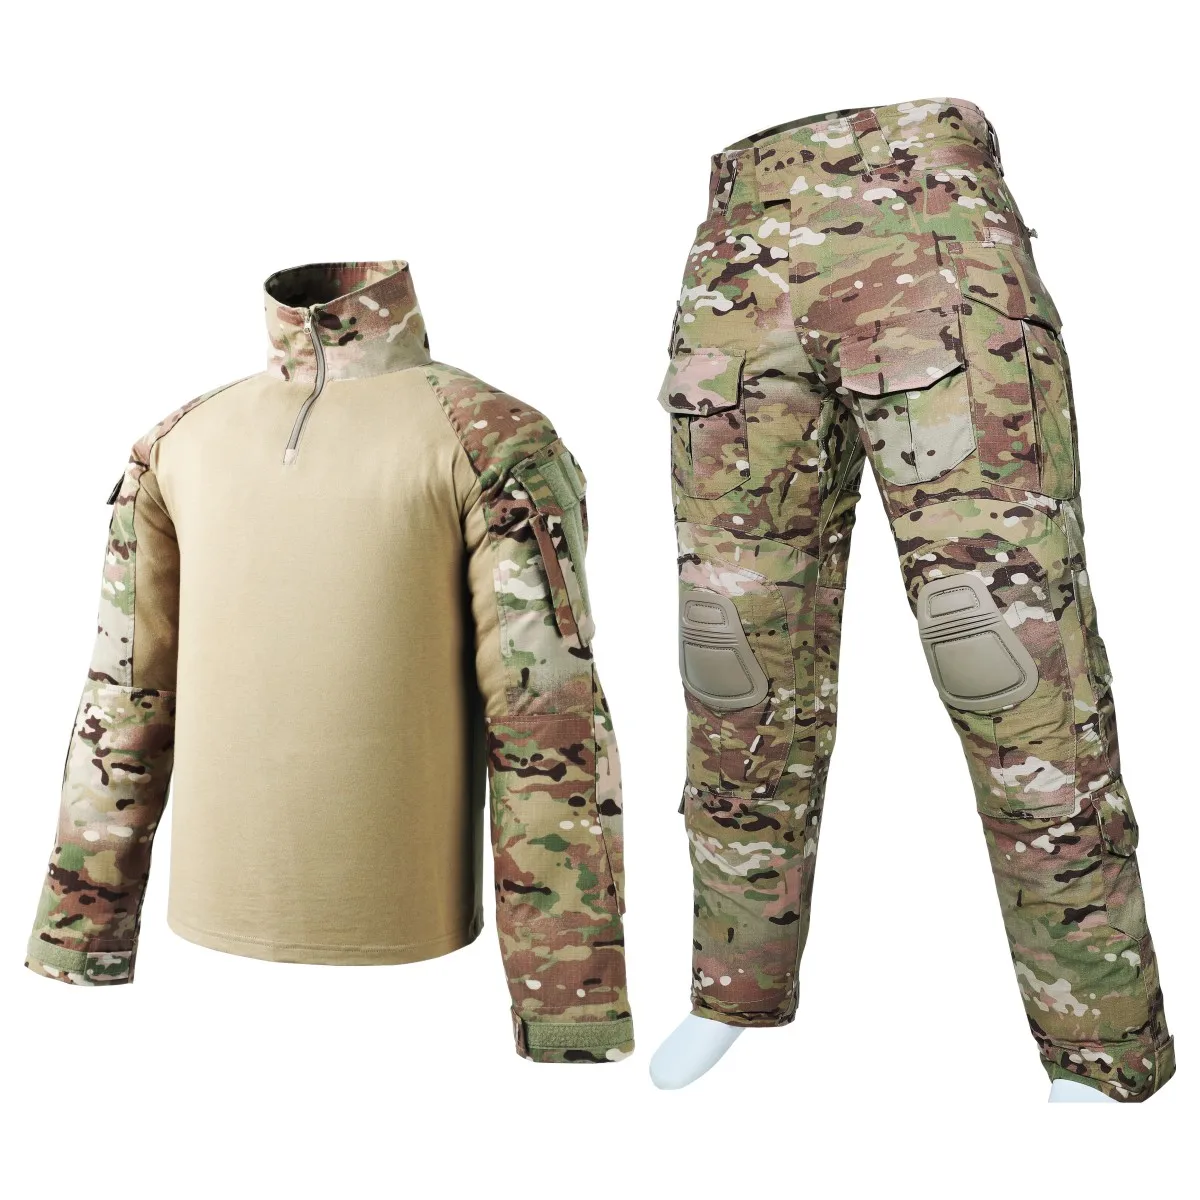 Airsoft Tactical Army Gen3 G3 Combat Suit Special Forces BDU Uniform Shirt Pants 